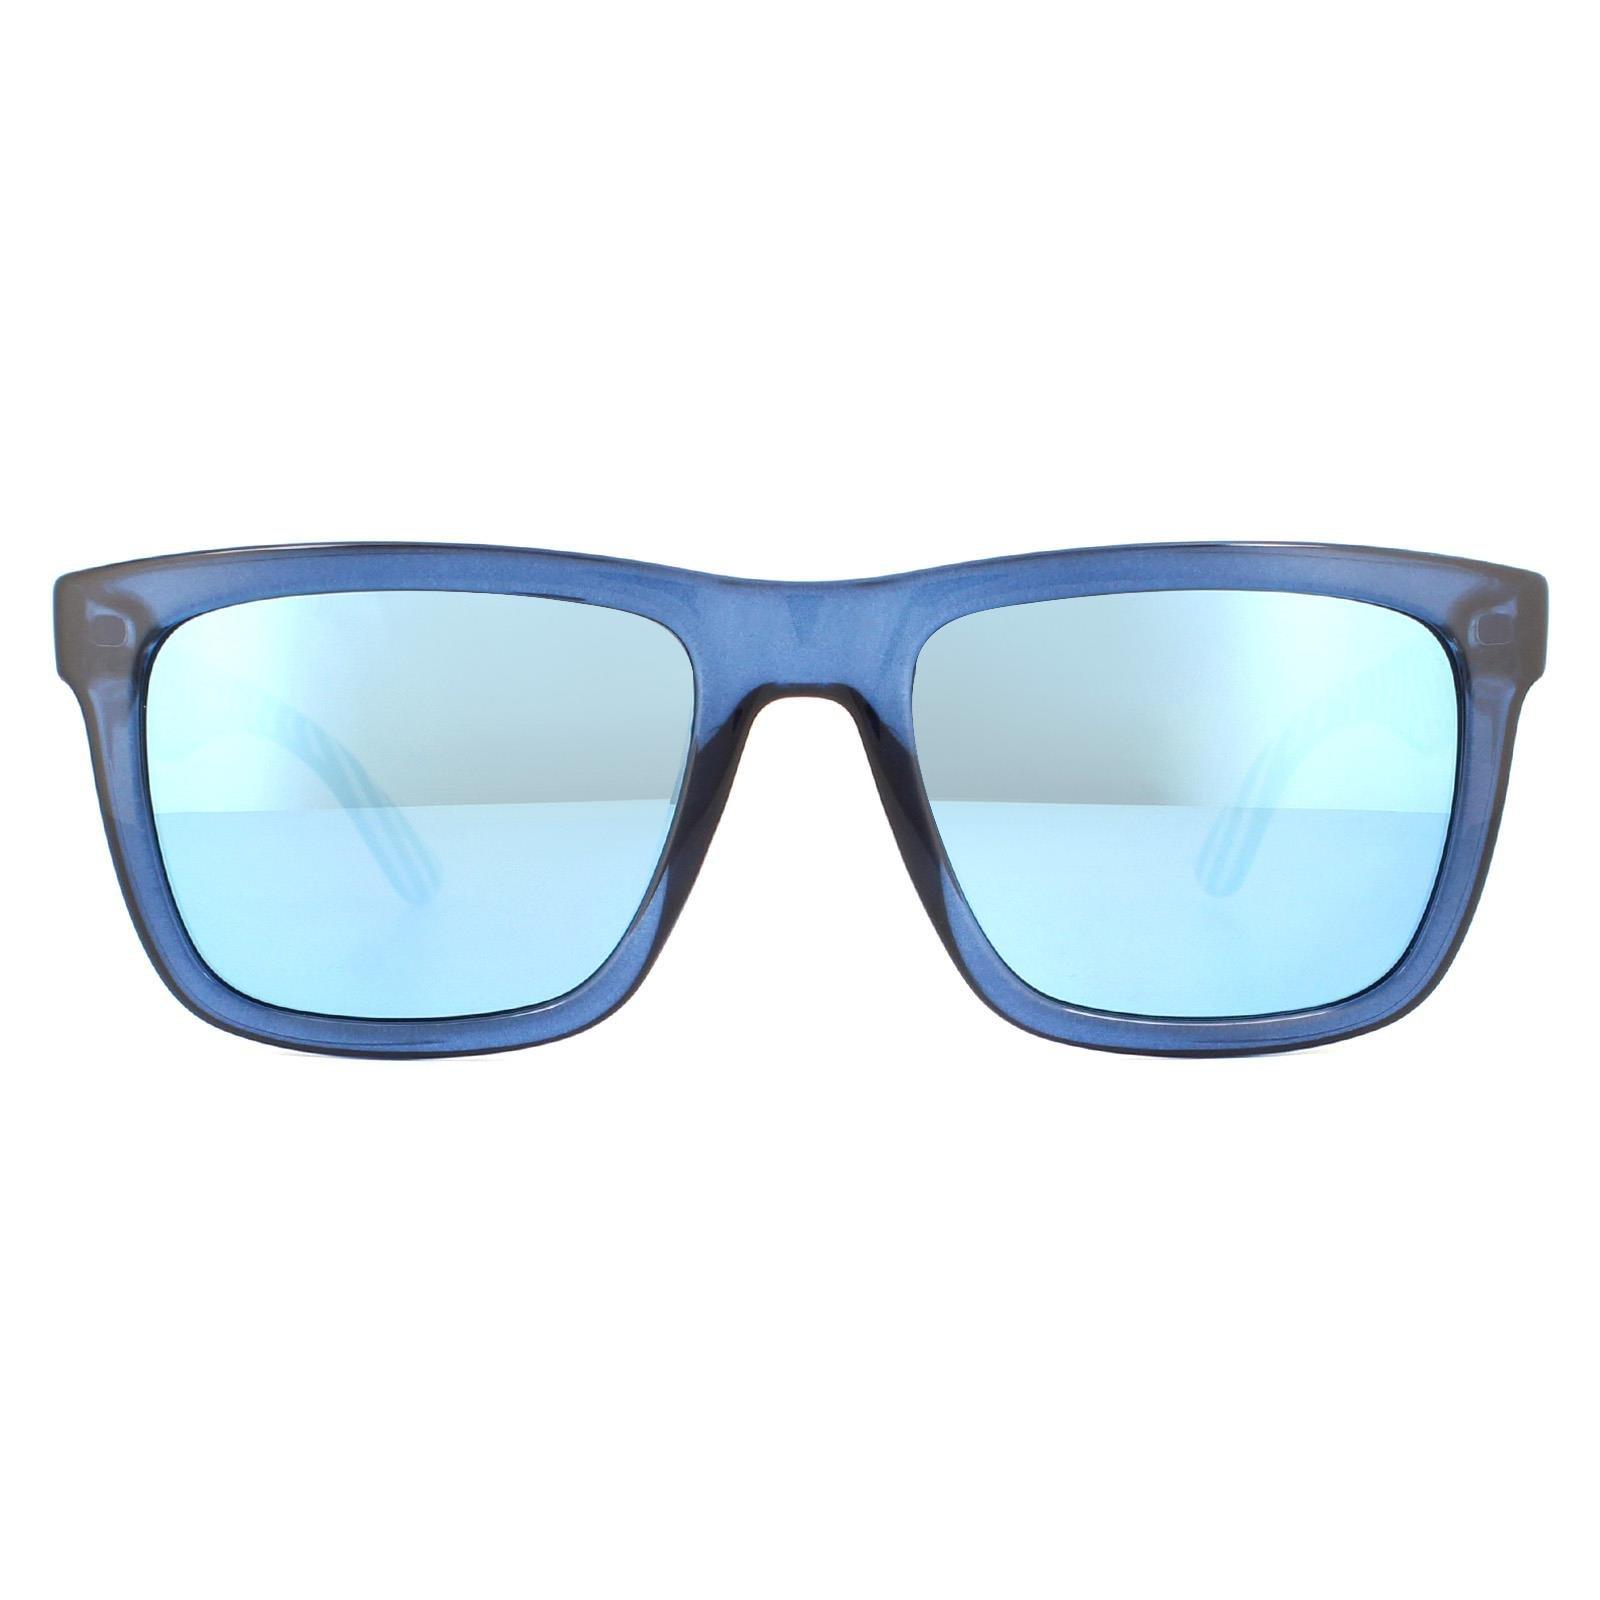 Прямоугольные синие синие зеркальные солнцезащитные очки Lacoste, синий 88 424 muline luca s 424